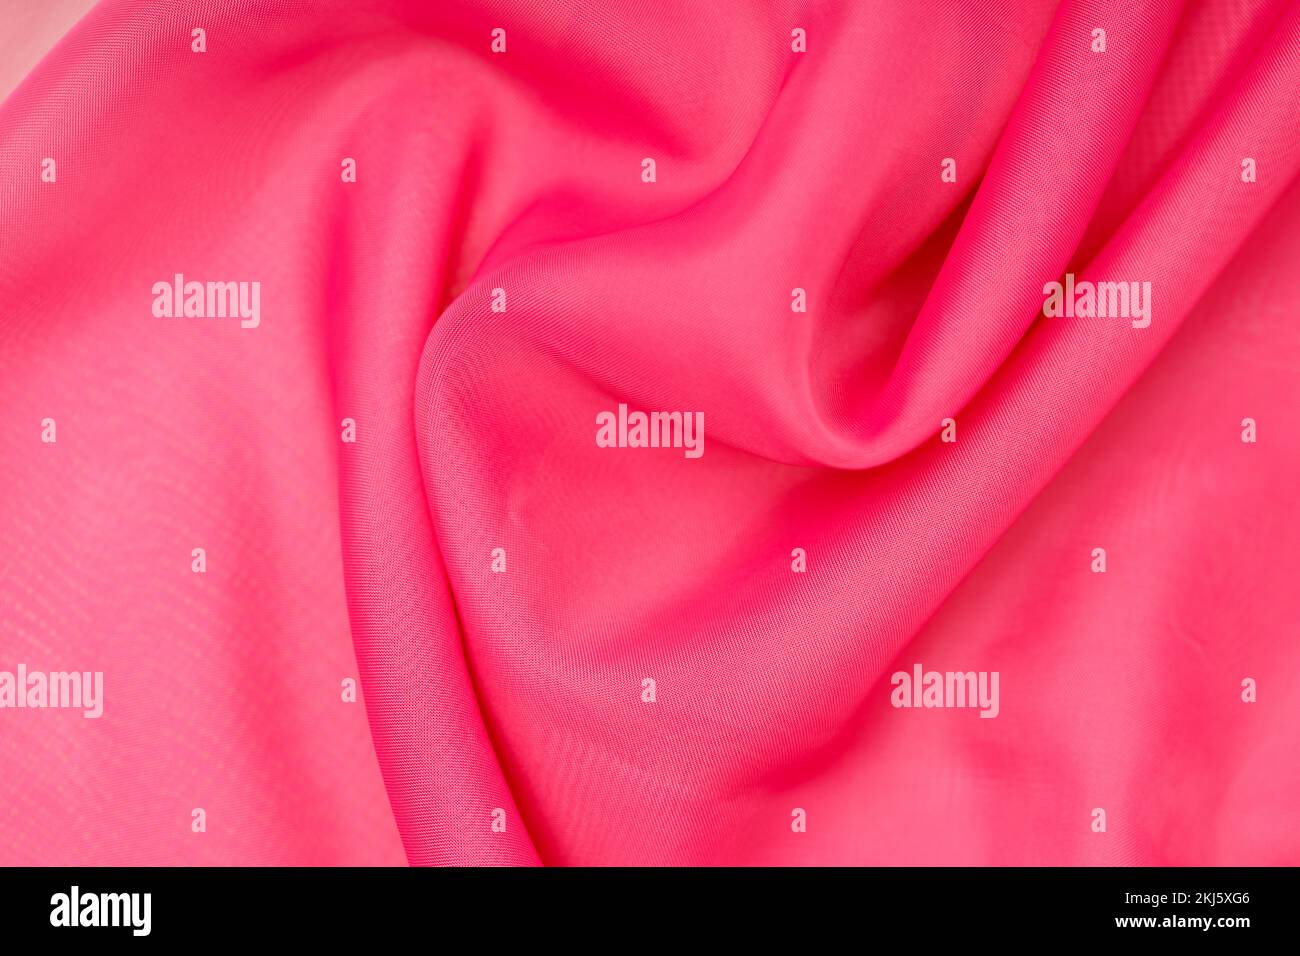 soie rose. tissu ondulé. arrière-plan abstrait pour le design. Photo de haute qualité Banque D'Images